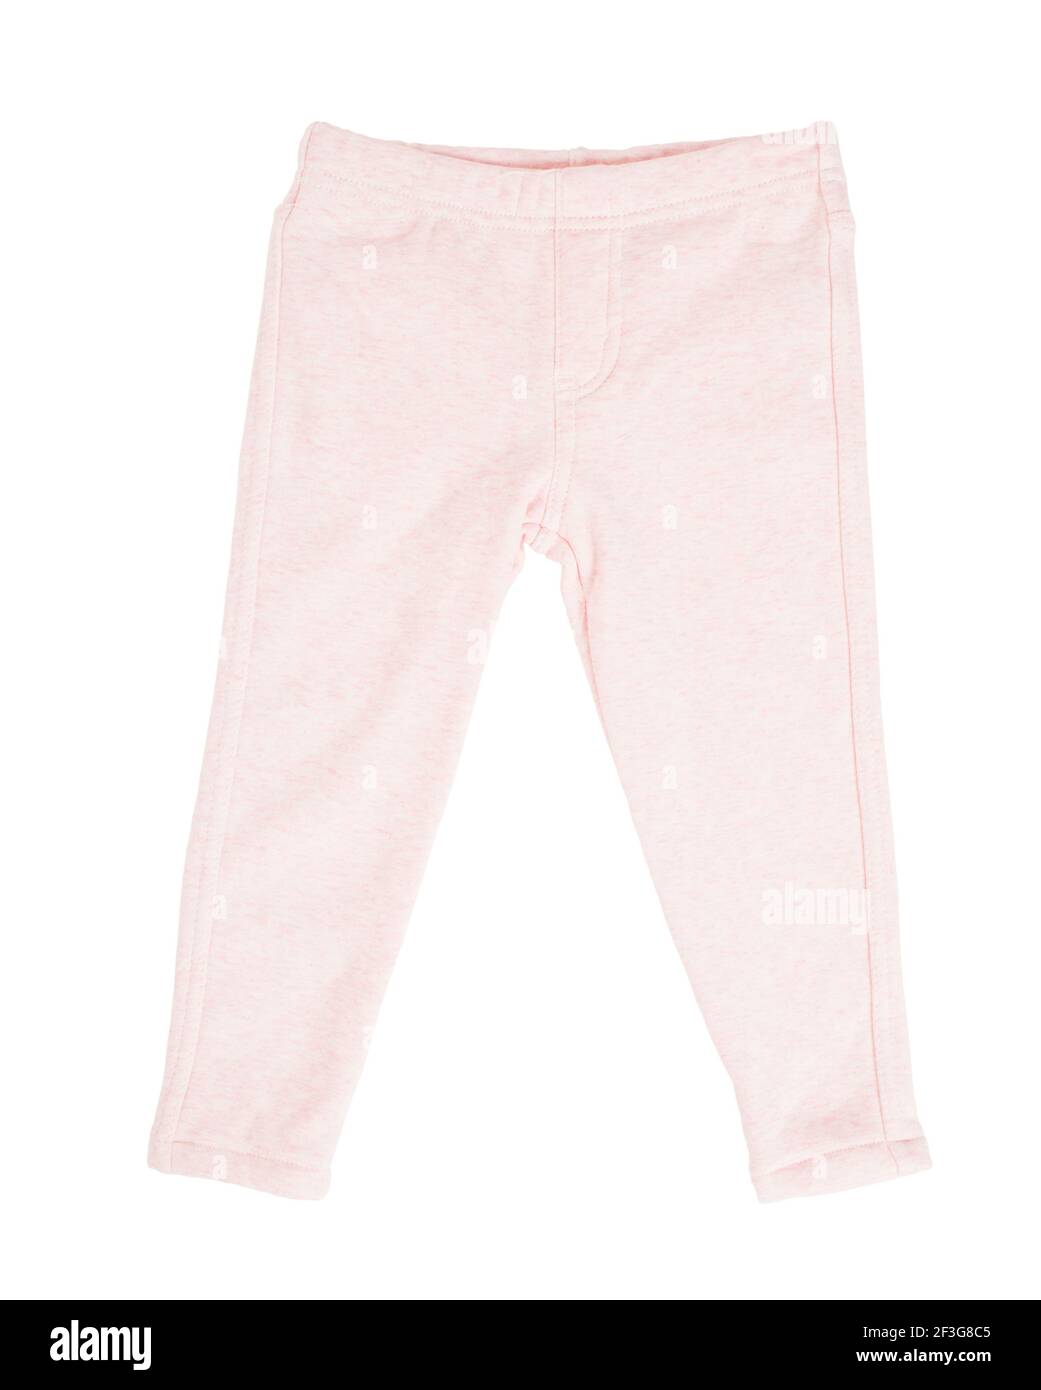 Pantaloni sportivi in cotone rosa per bambini. Isolato su sfondo bianco. Foto Stock